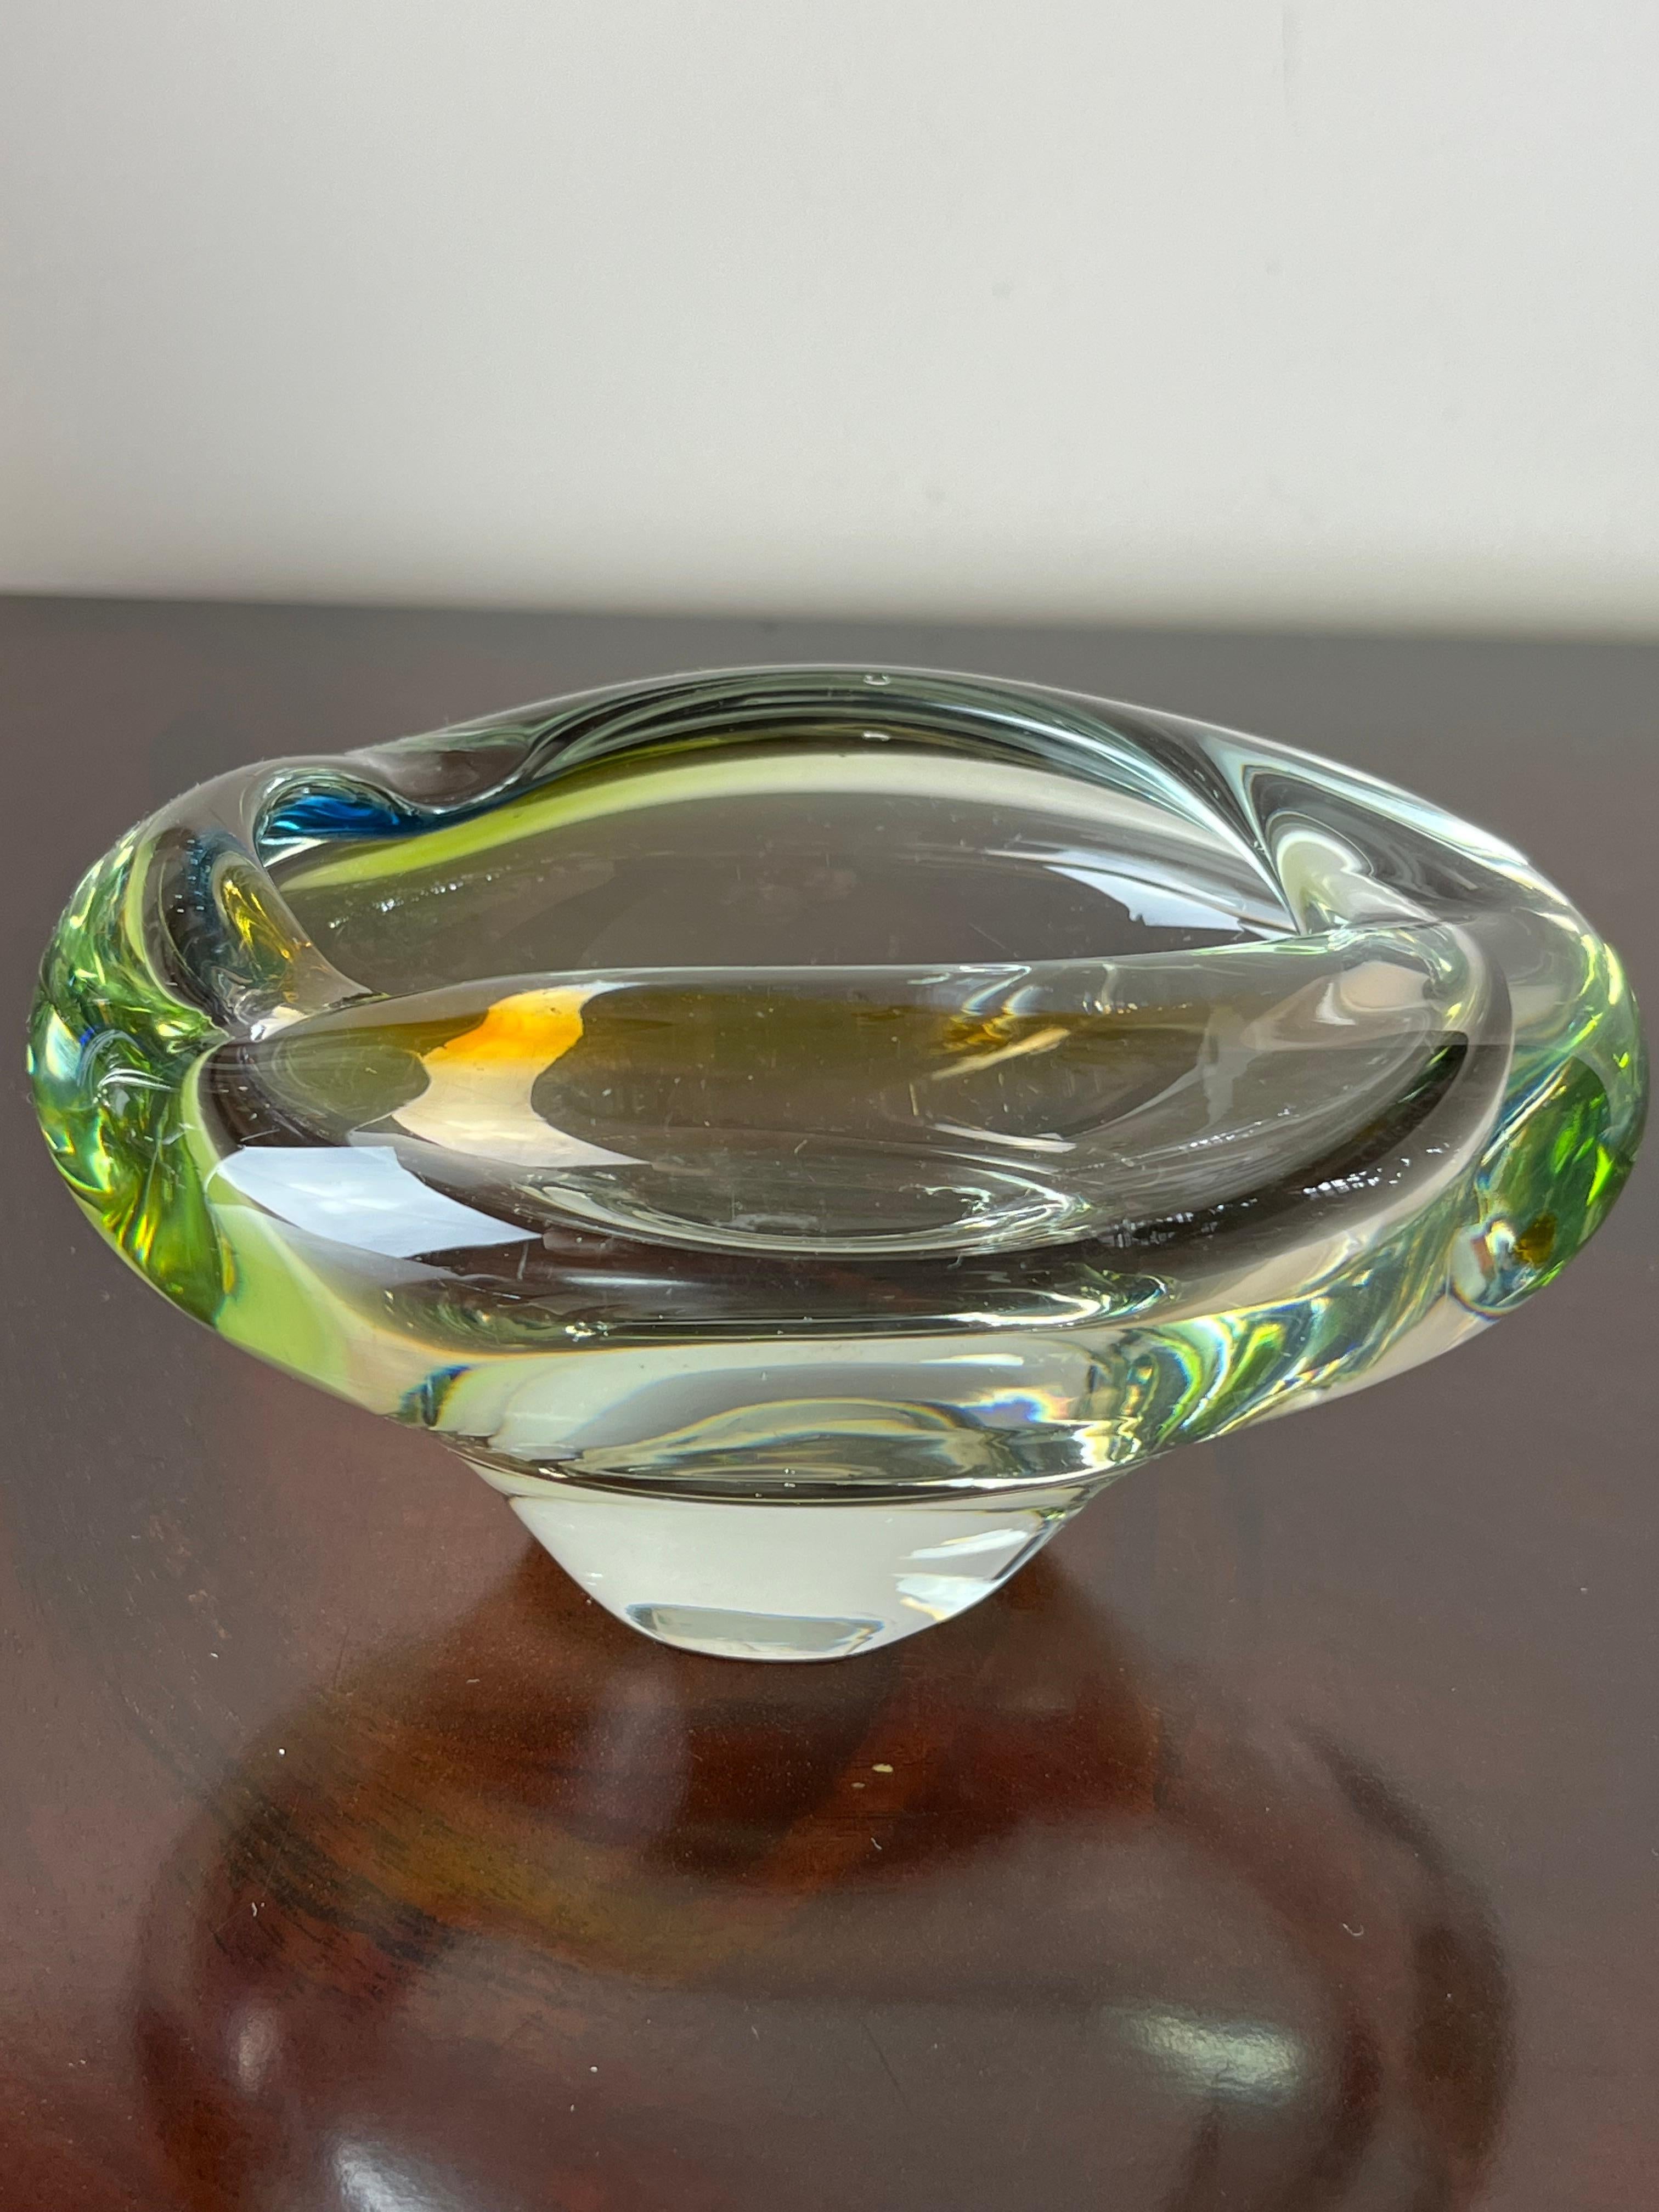 Aschenbecher aus Murano-Glas, Italien, 1960er Jahre
Gefunden in einer noblen Wohnung. Es ist intakt und in gutem Zustand. Sie können kleine Luftblasen im Inneren des Glases beobachten. Dies bescheinigt die Echtheit eines handwerklich hergestellten